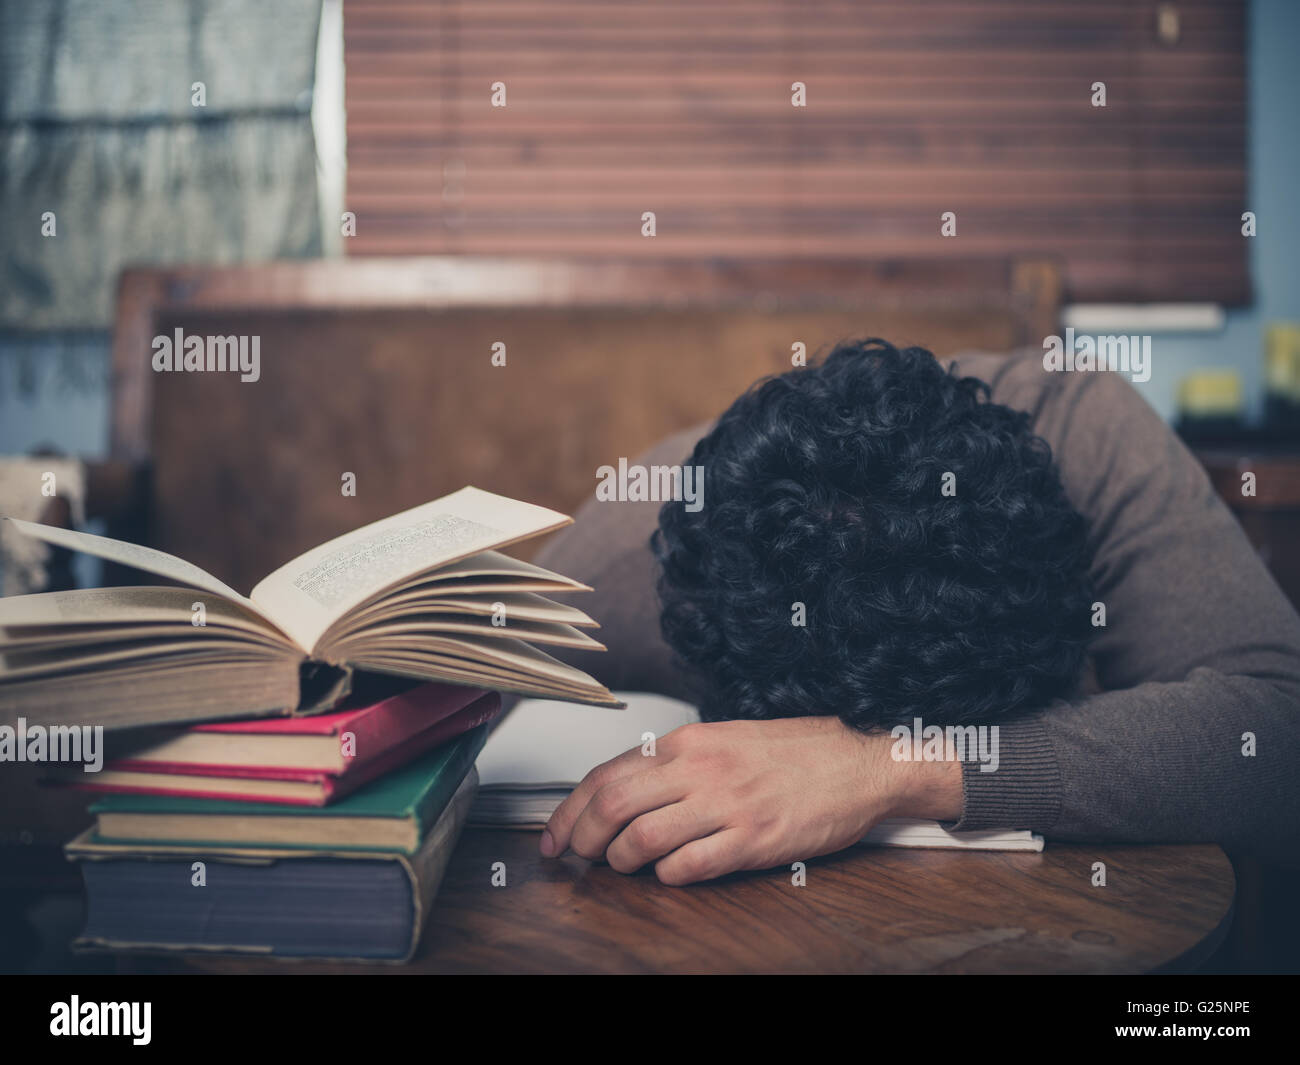 Un étudiant fatigué s'est endormi, la tête sur une table basse entourée de livres Banque D'Images